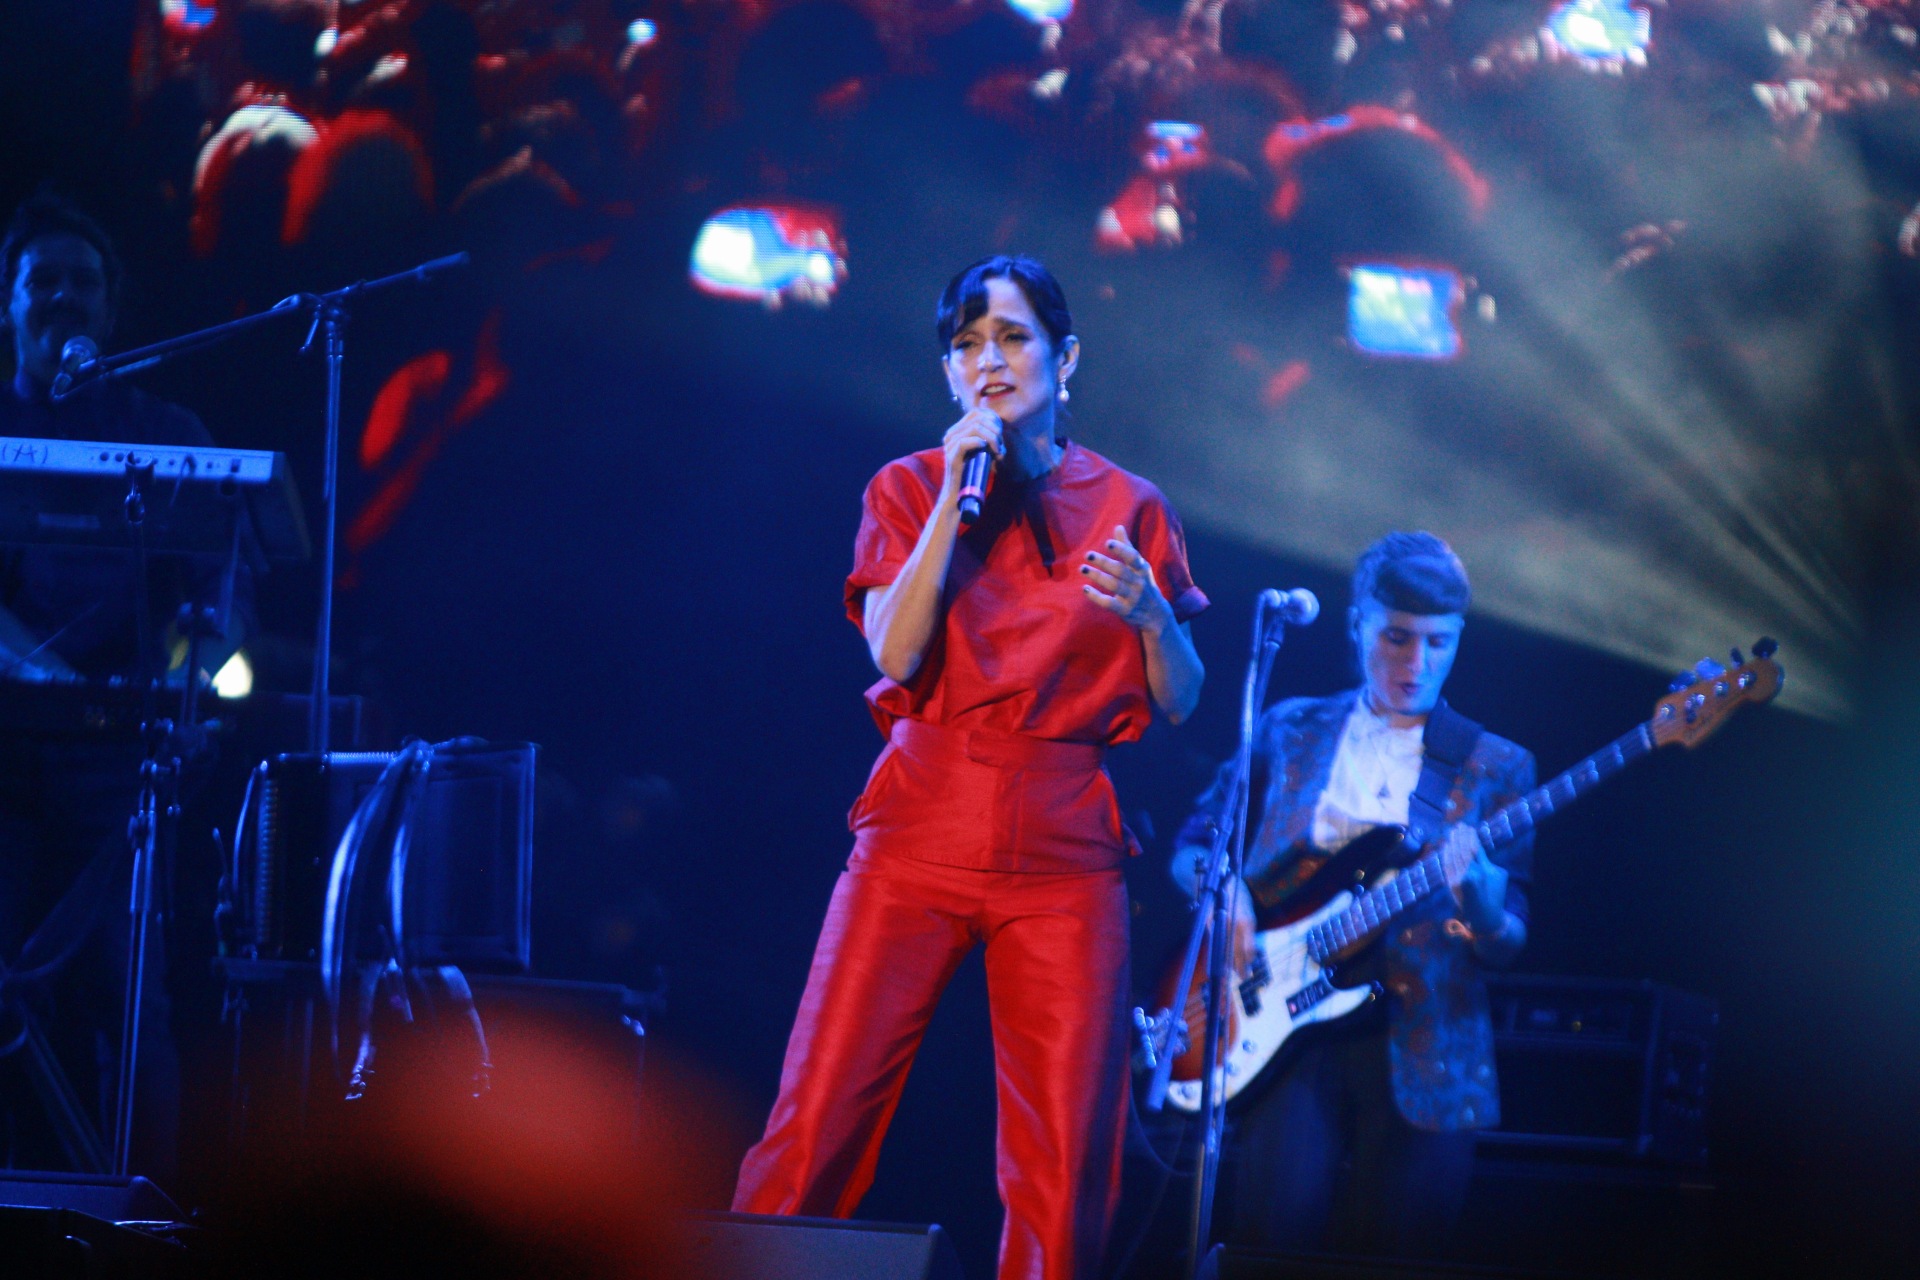 El concierto de Julieta Venegas en el Vive Latino estuvo íntegramente dedicado a la mujer y su revolución (Foto: Gustavo Azem/ Infobae)